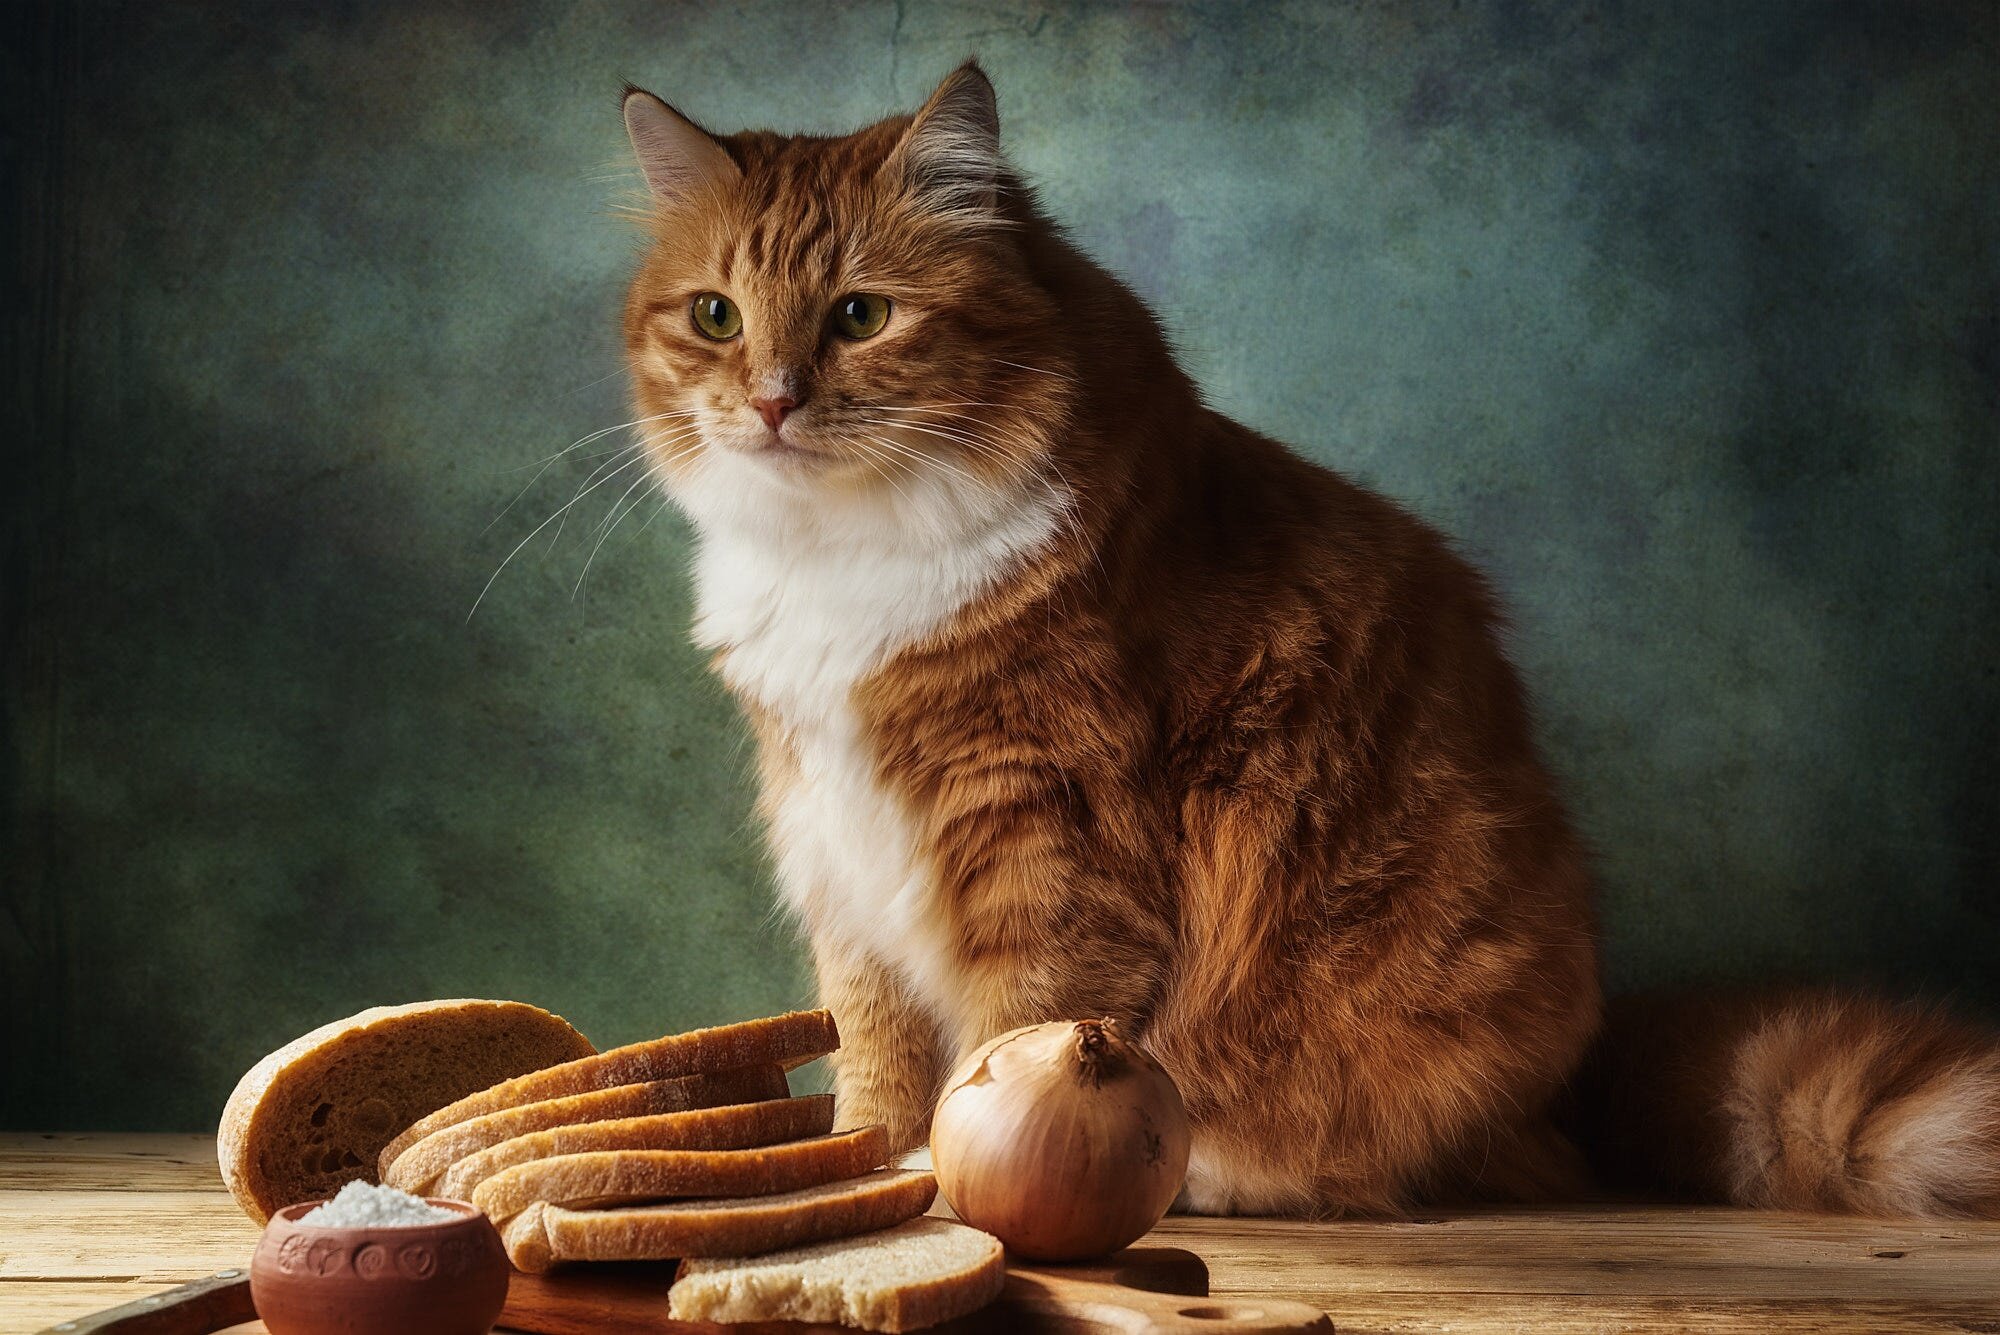 ekmeklerin. yanında duran kedi